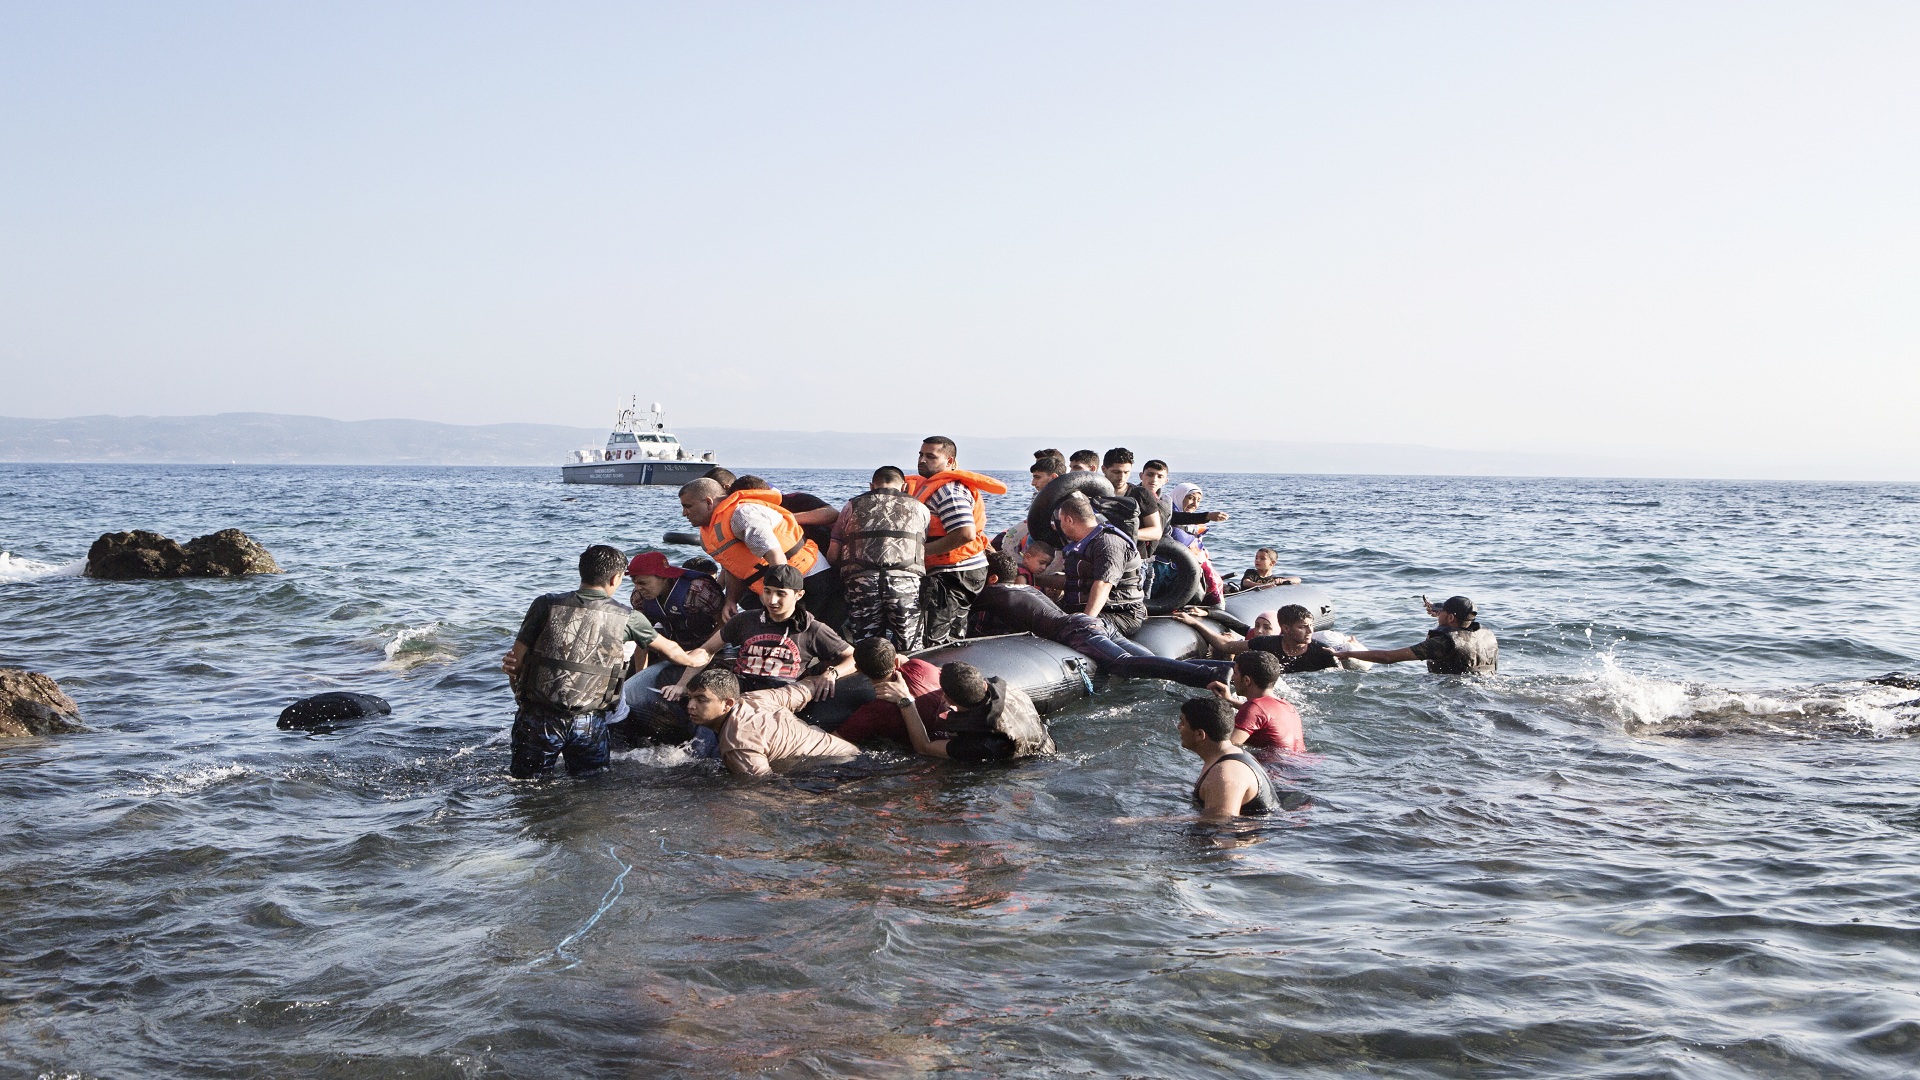 إنقاذ 137 مهاجرا في سواحل ليبيا 2018-04-1310:53:18.310077-bb029f95-e43b-4466-9fb4-4ac25c73232d